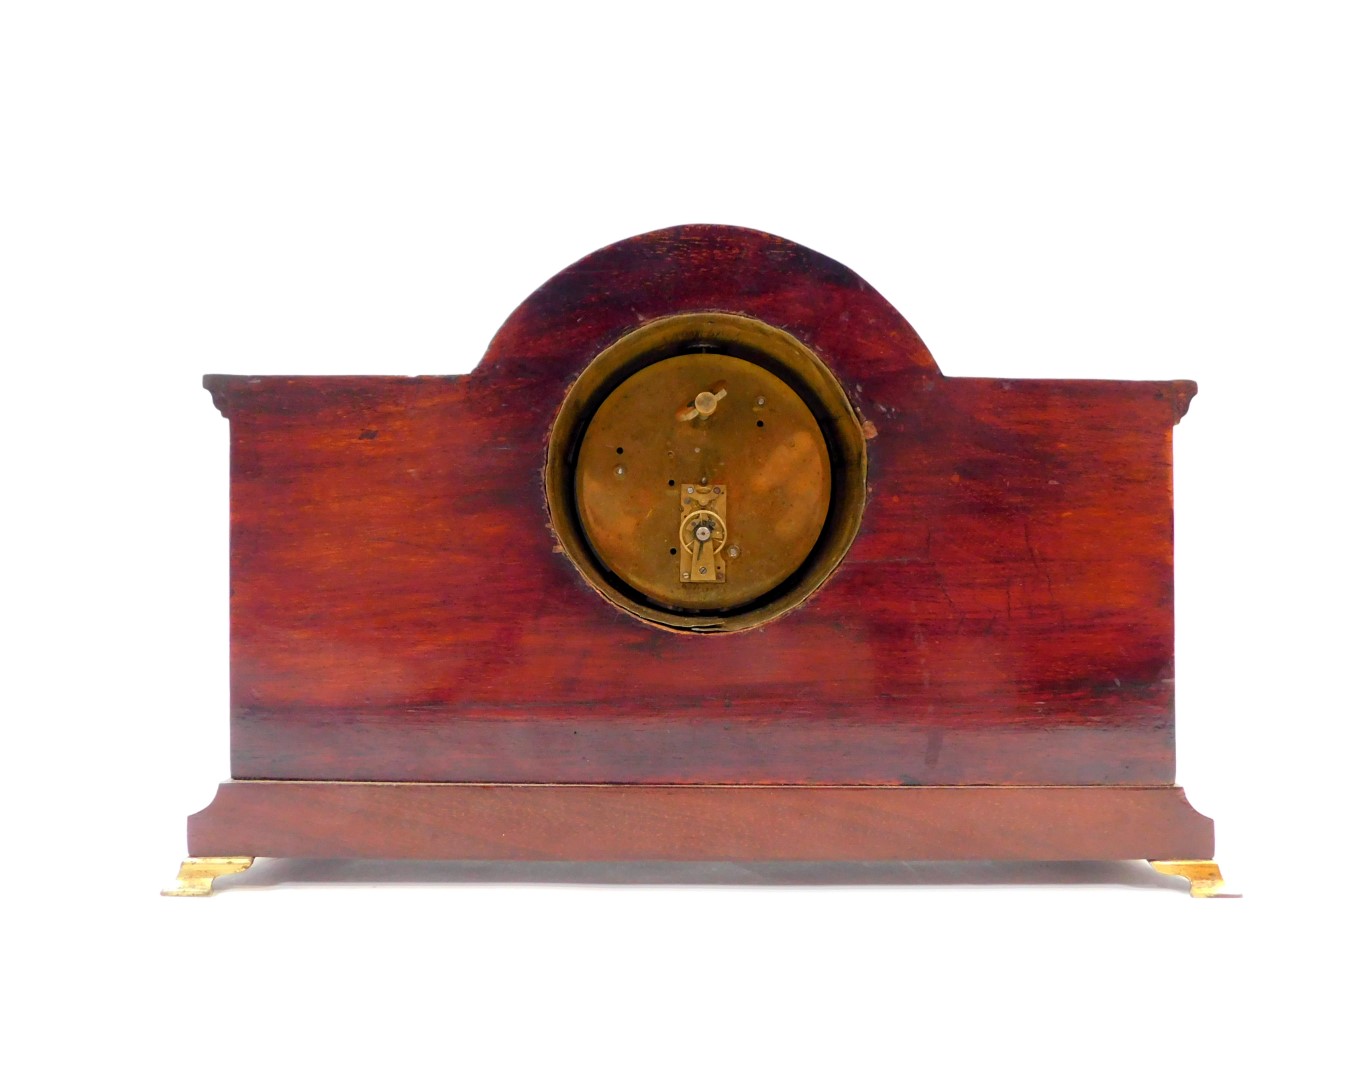 An Edwardian mahogany and inlaid mantel clock, circular dial bearing Roman numerals, clockwork - Image 3 of 4